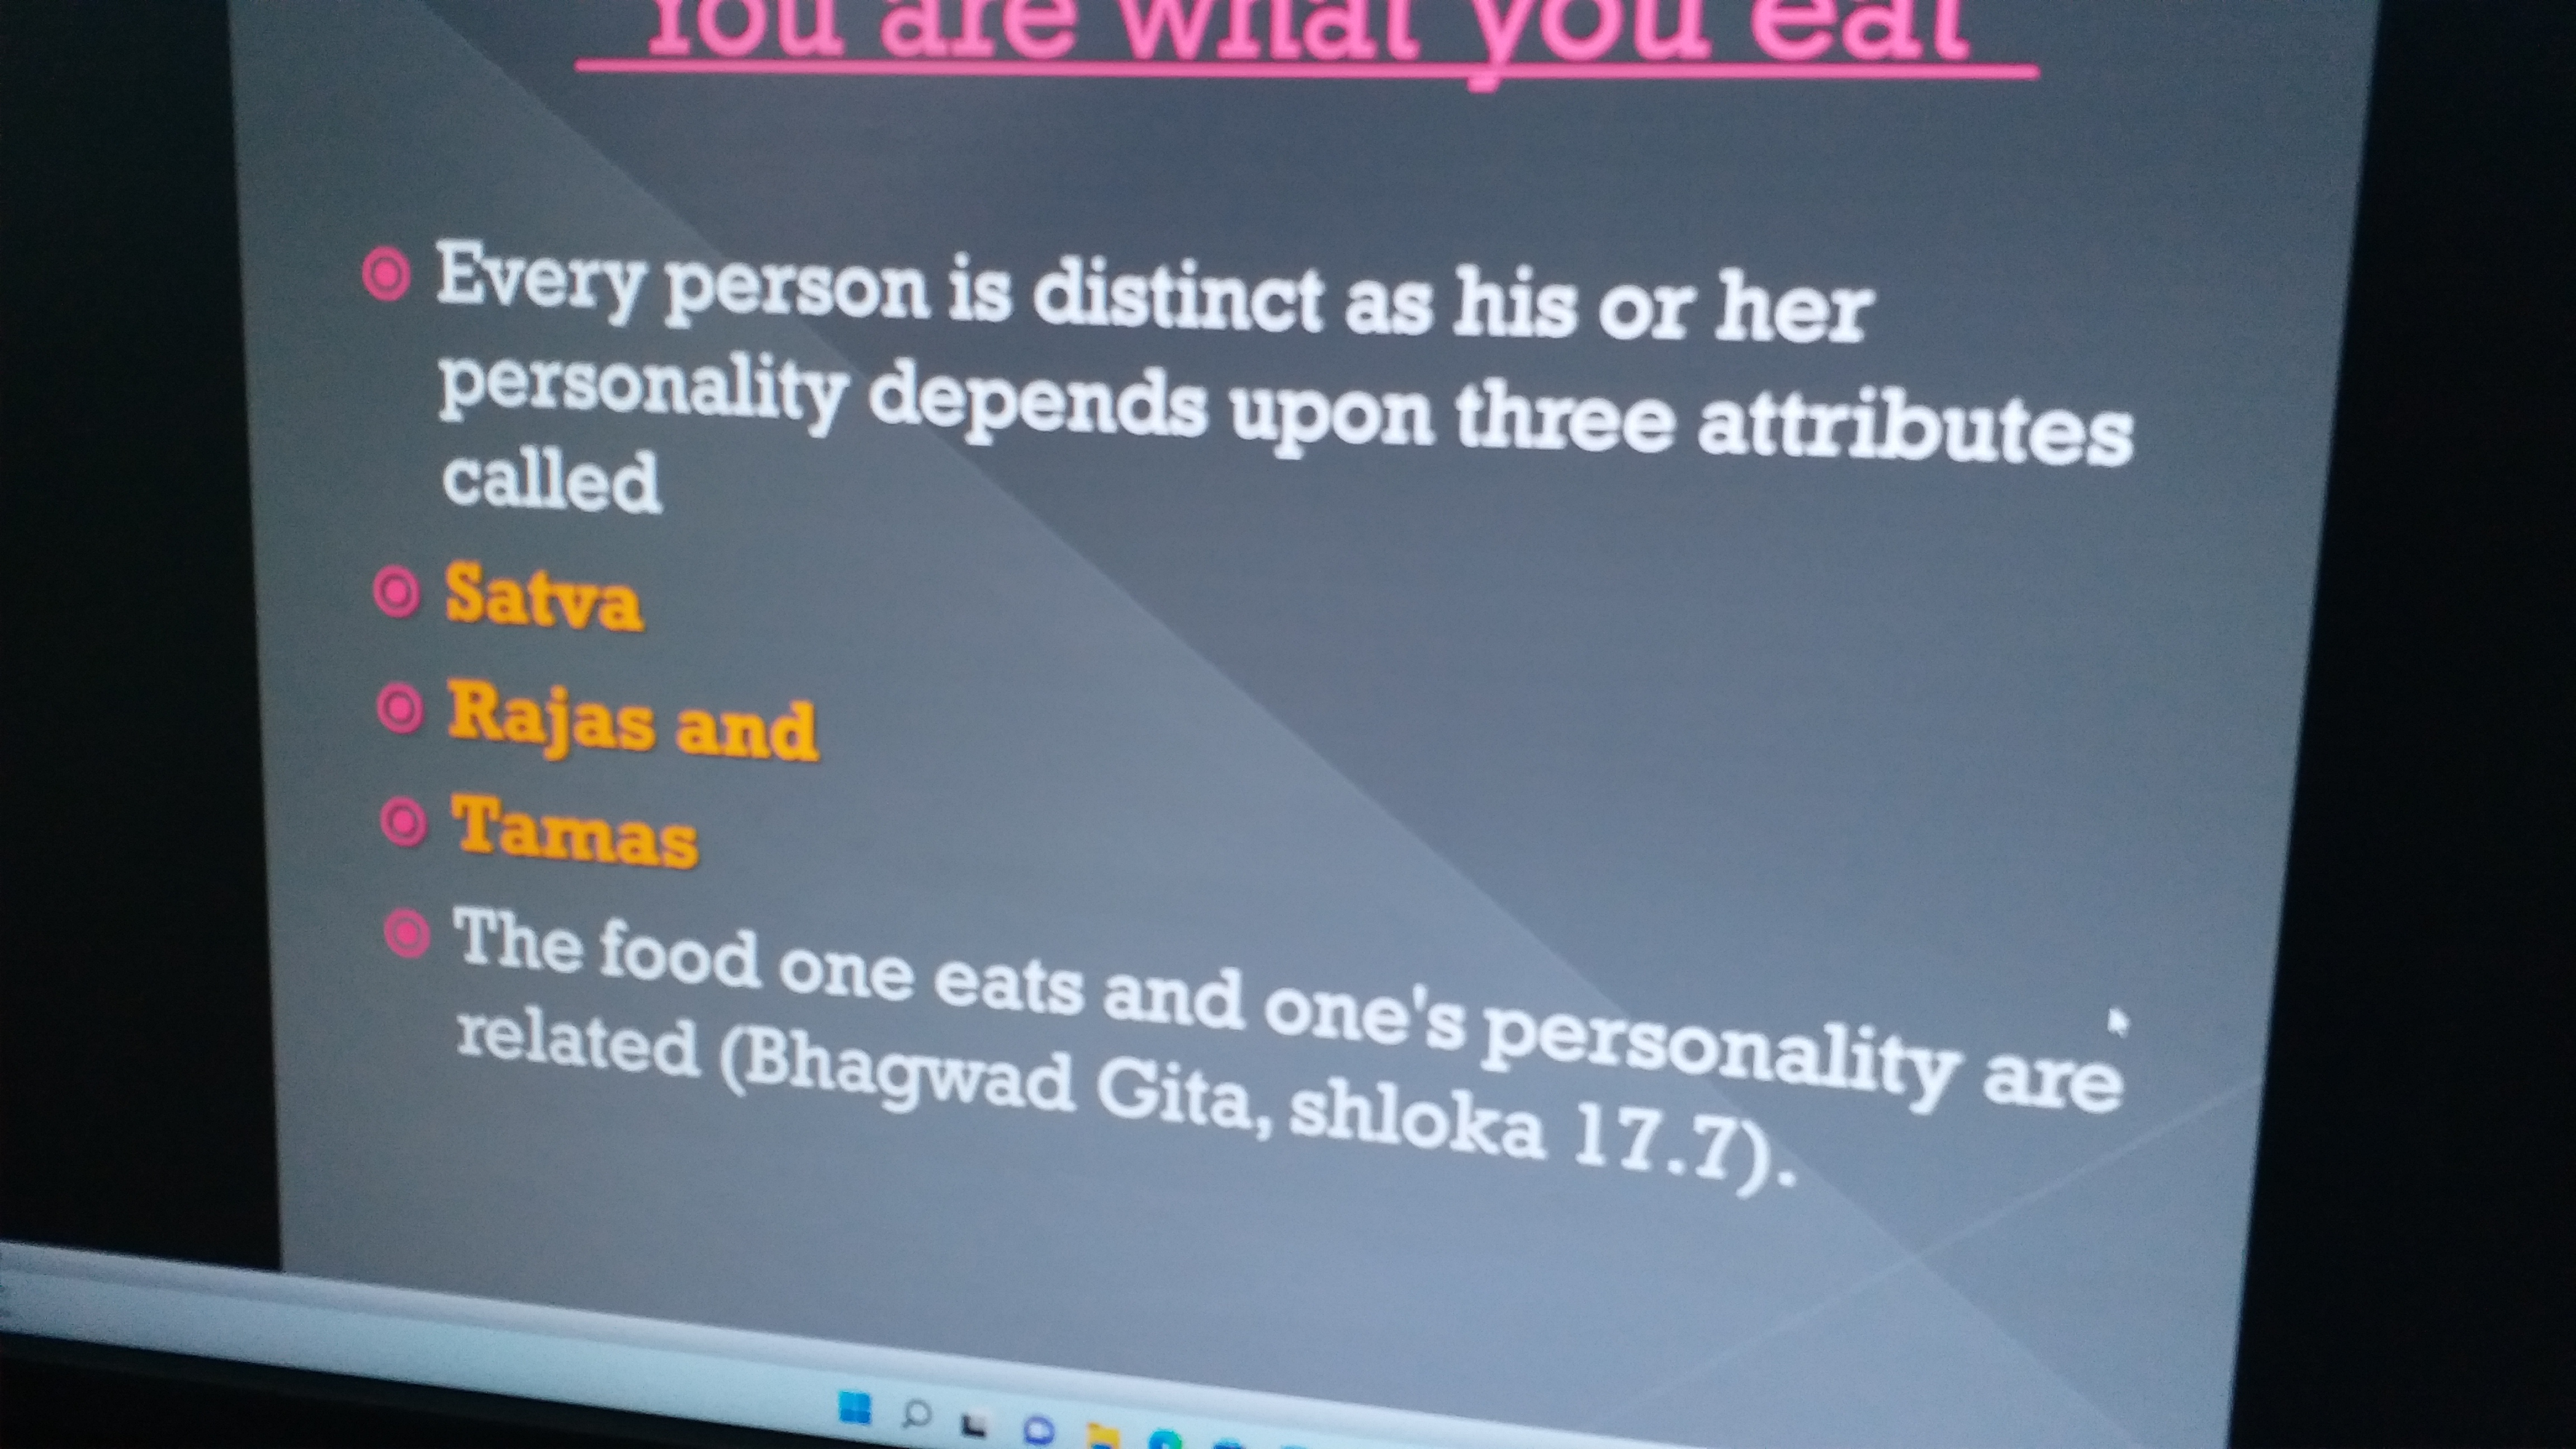 श्रीमद्भागवत गीता के 17 वें अध्याय में भोजन की जानकारी